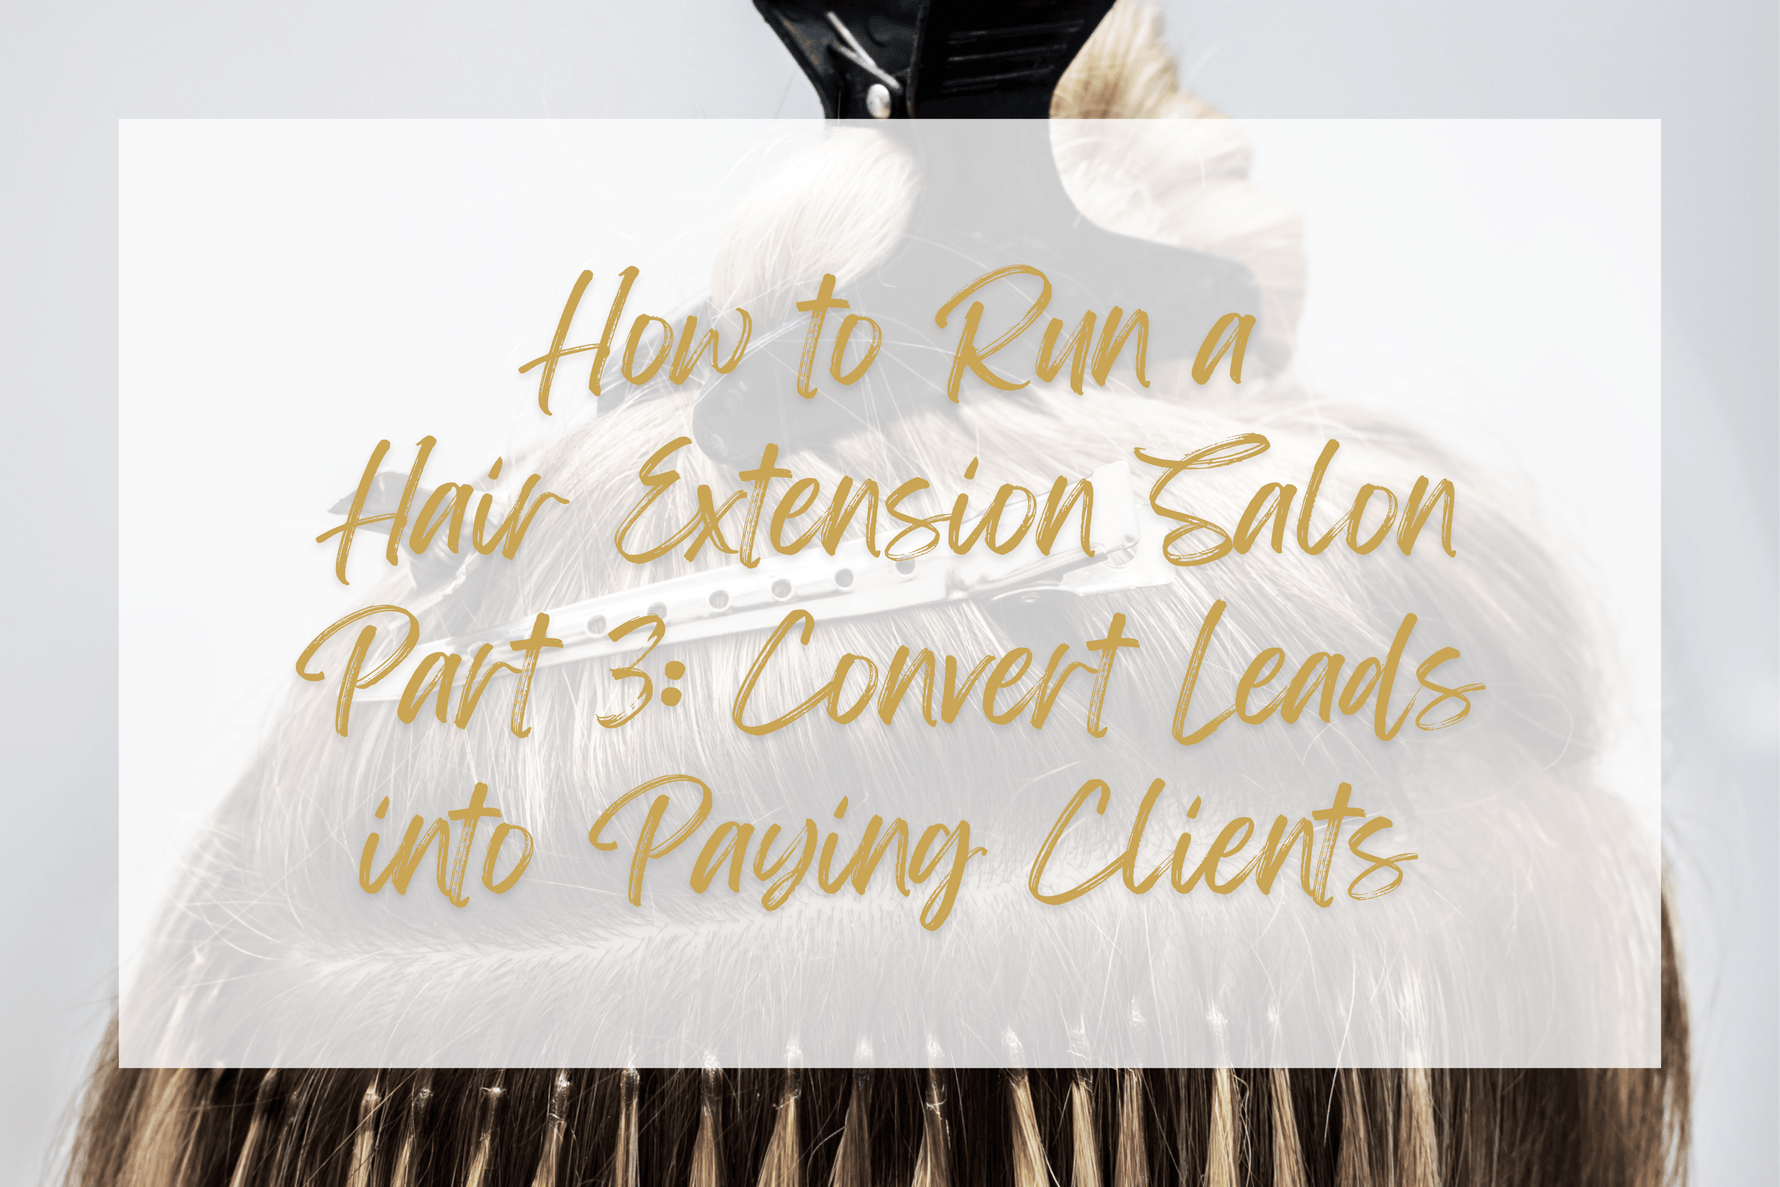 How to run a hair extension salon Part 3